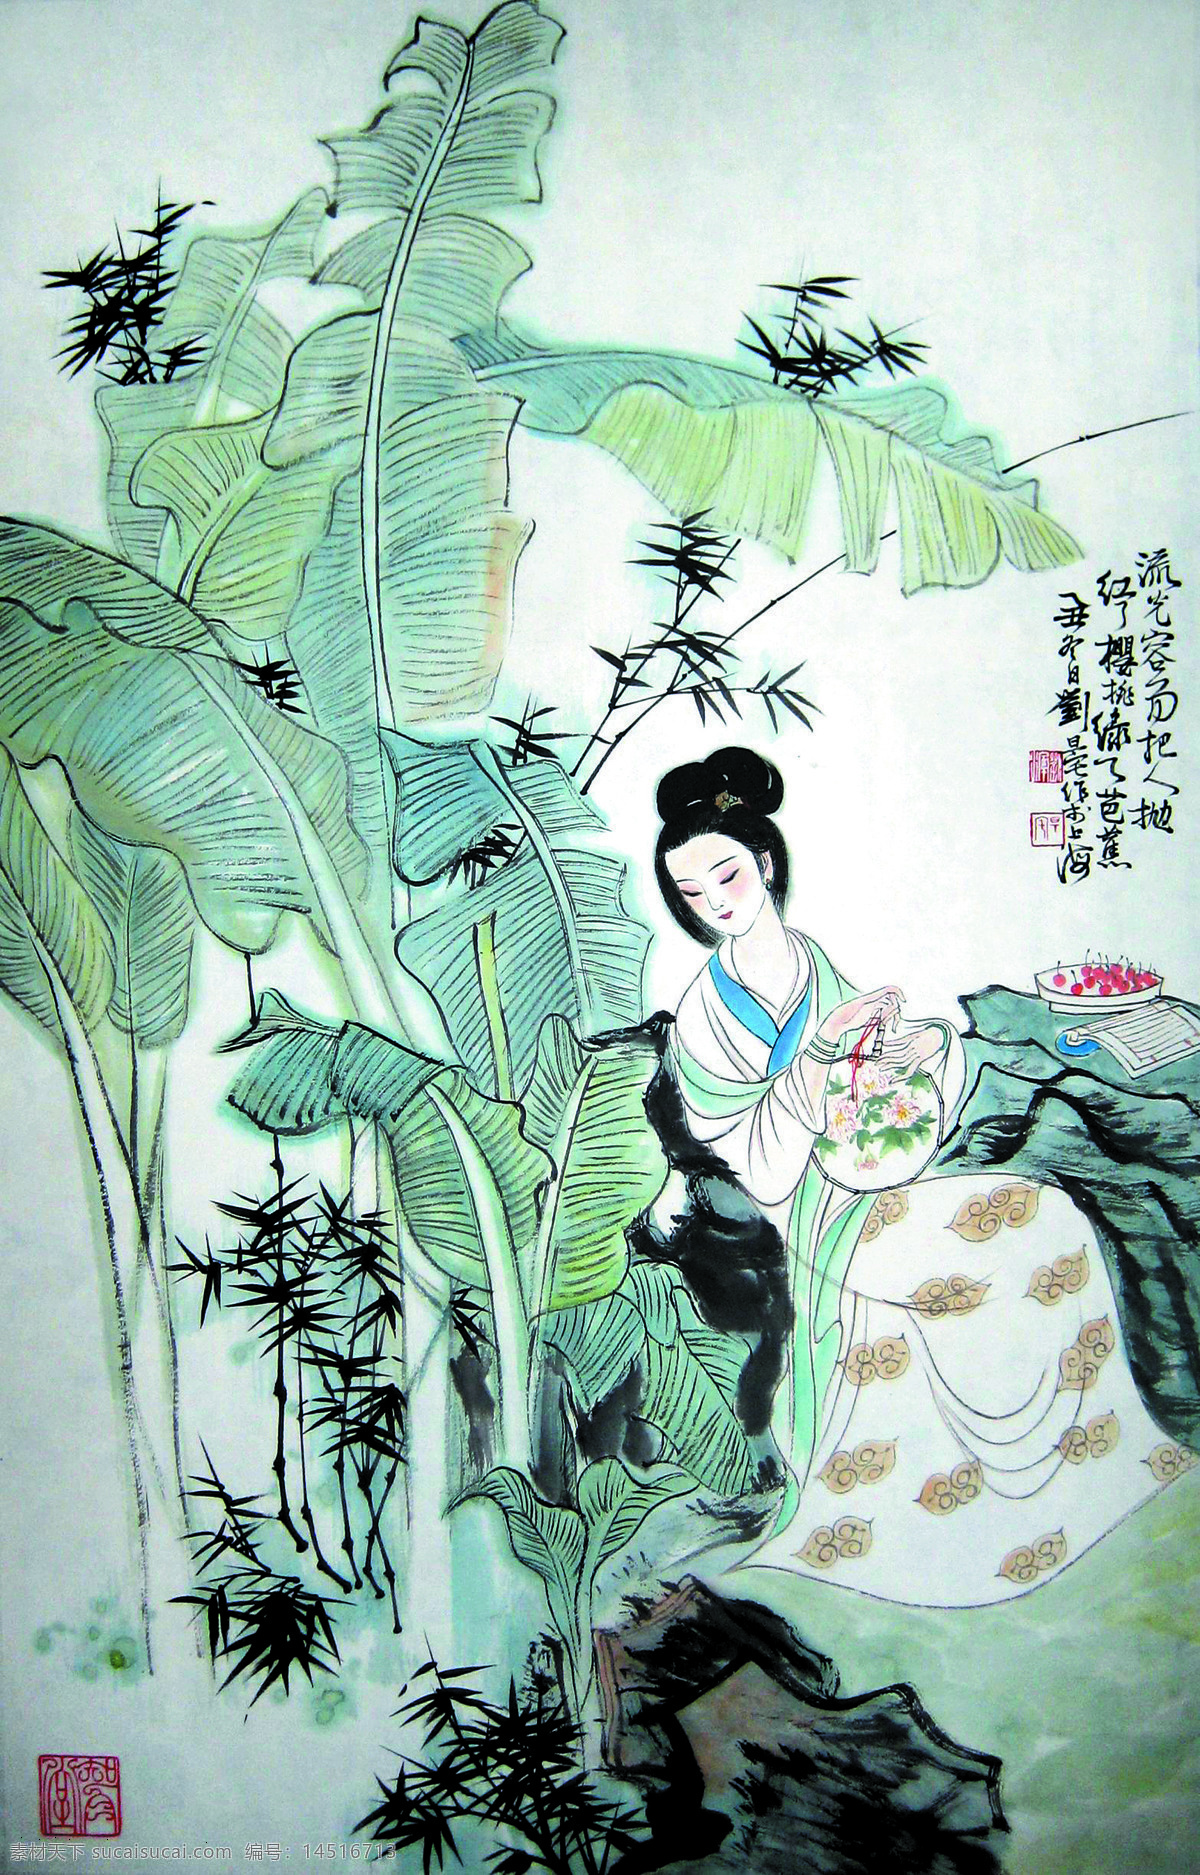 古代仕女图 美术 中国画 工笔画 人物画 女人 女子 仕女 丽人 蕉树 竹子 文化艺术 绘画书法